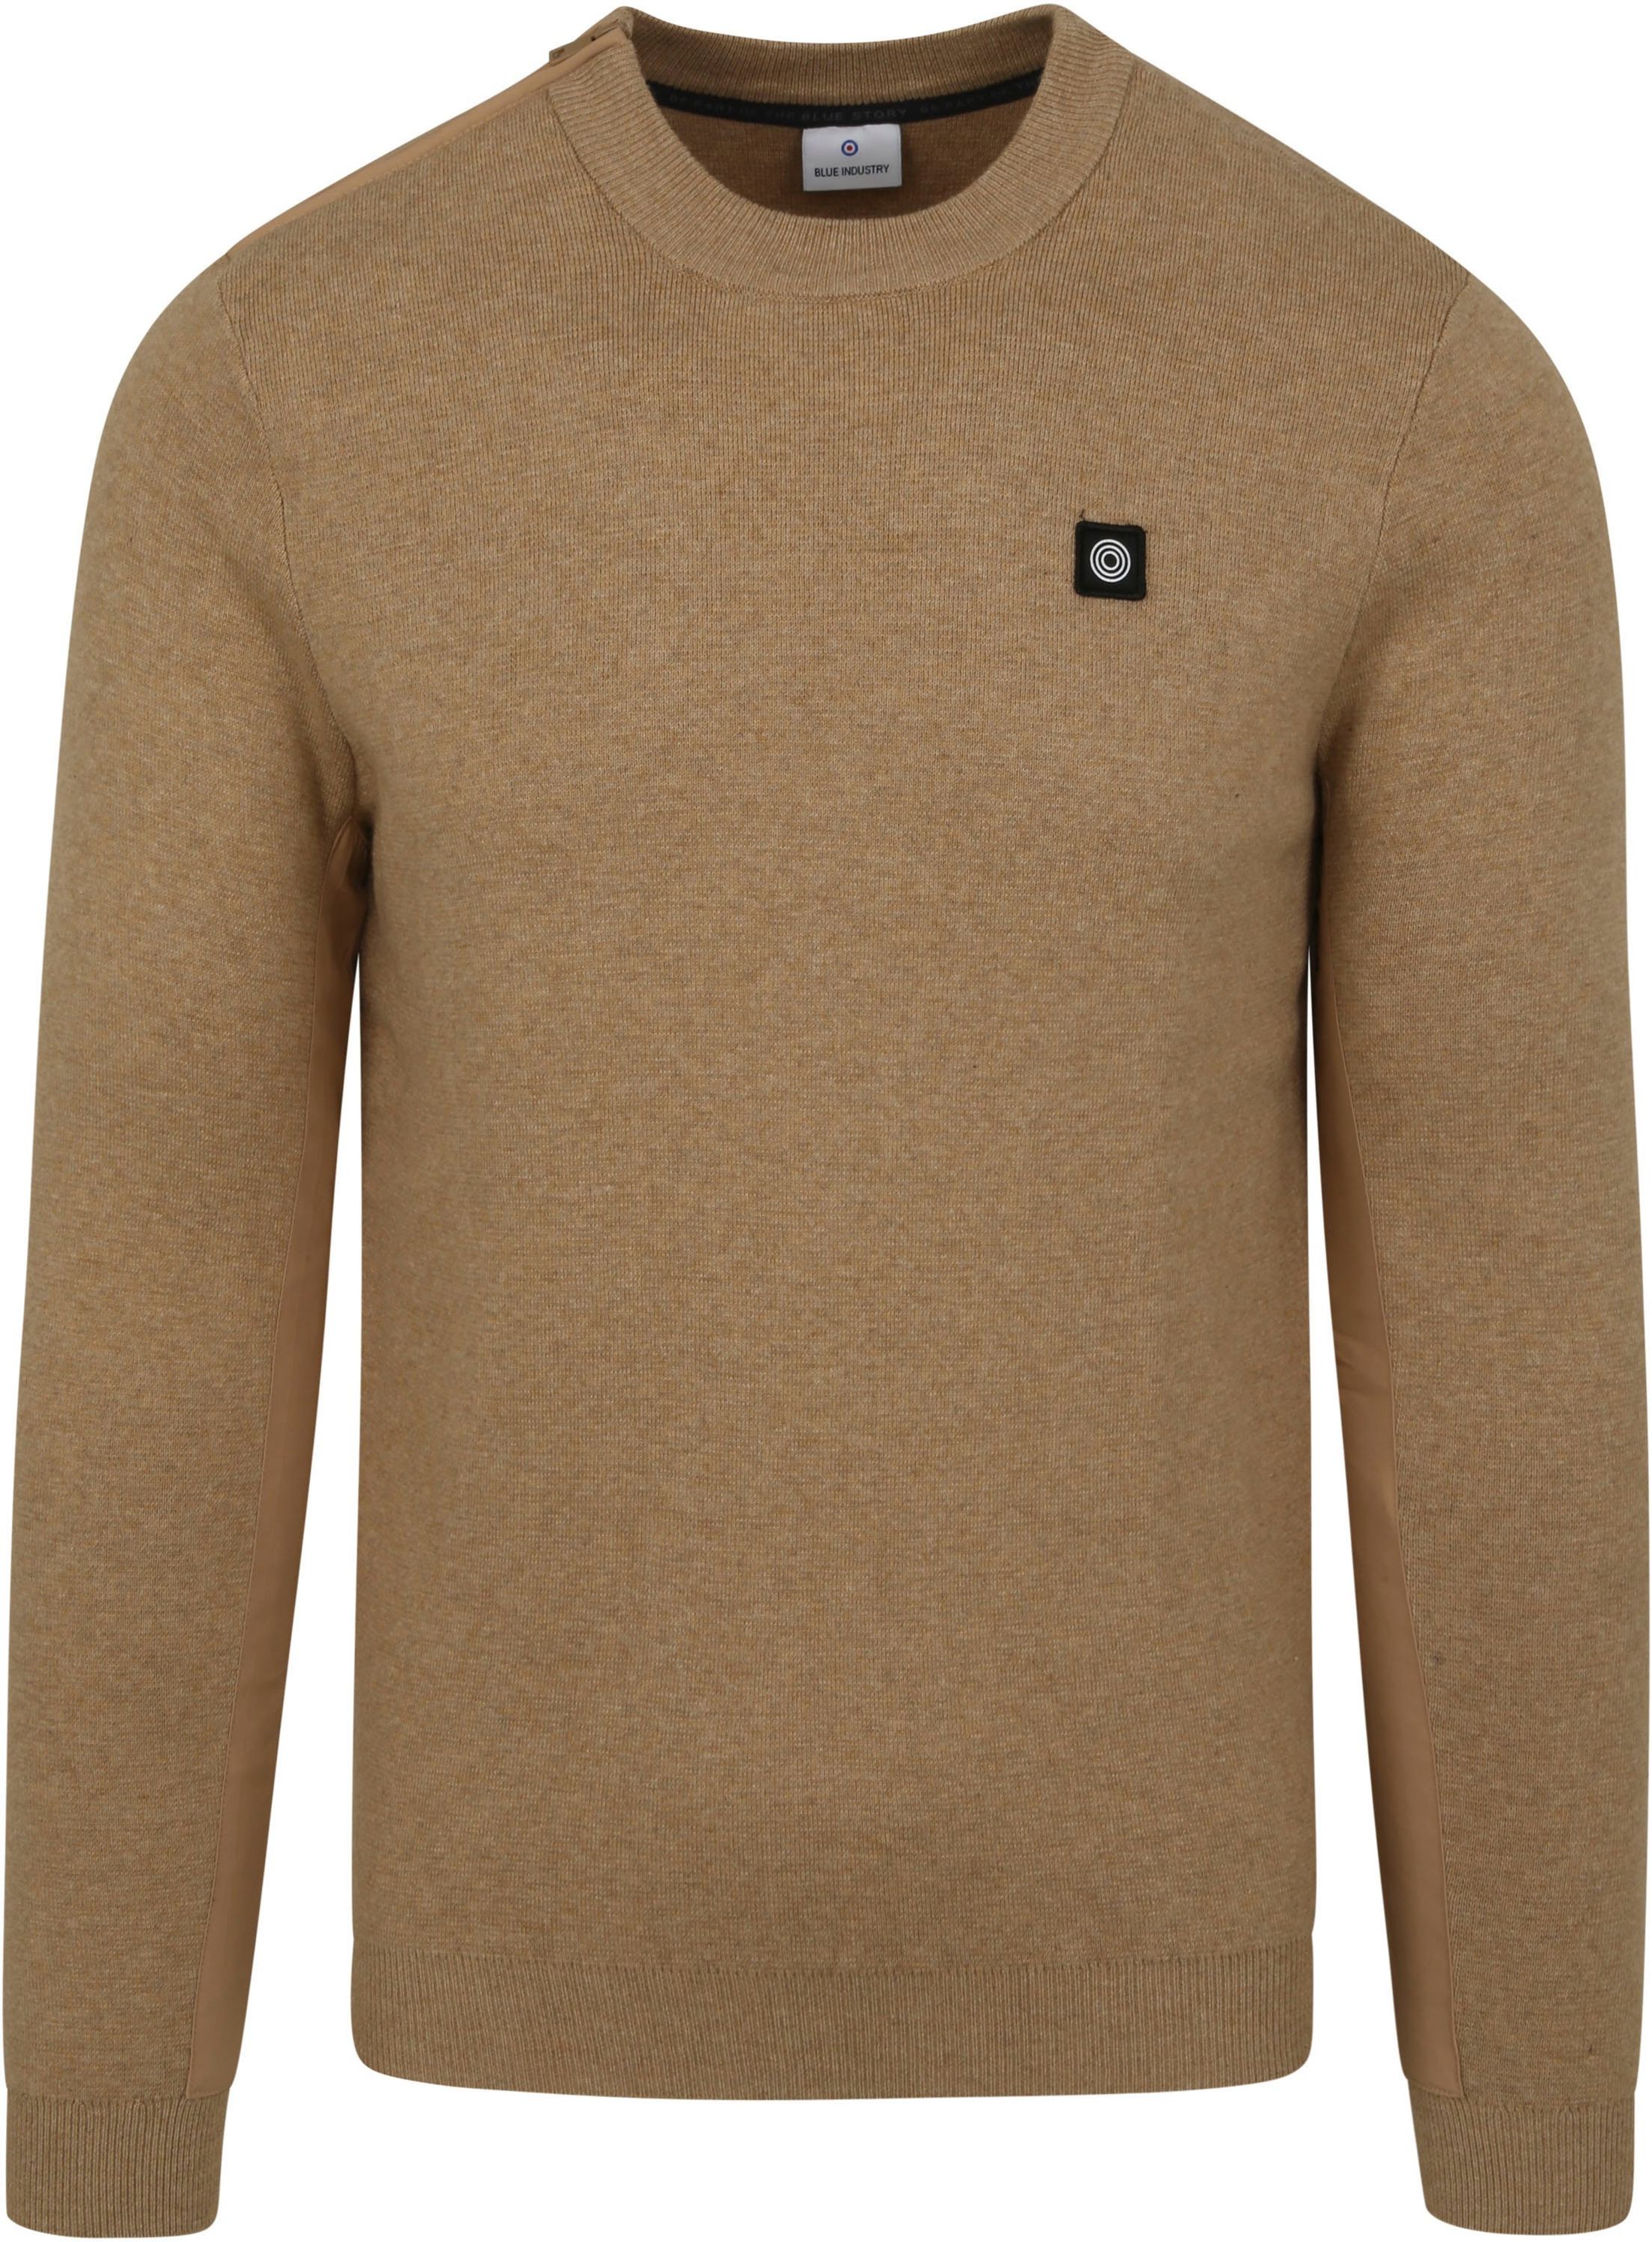 Blue Industry Sweater Zipper Beige size L